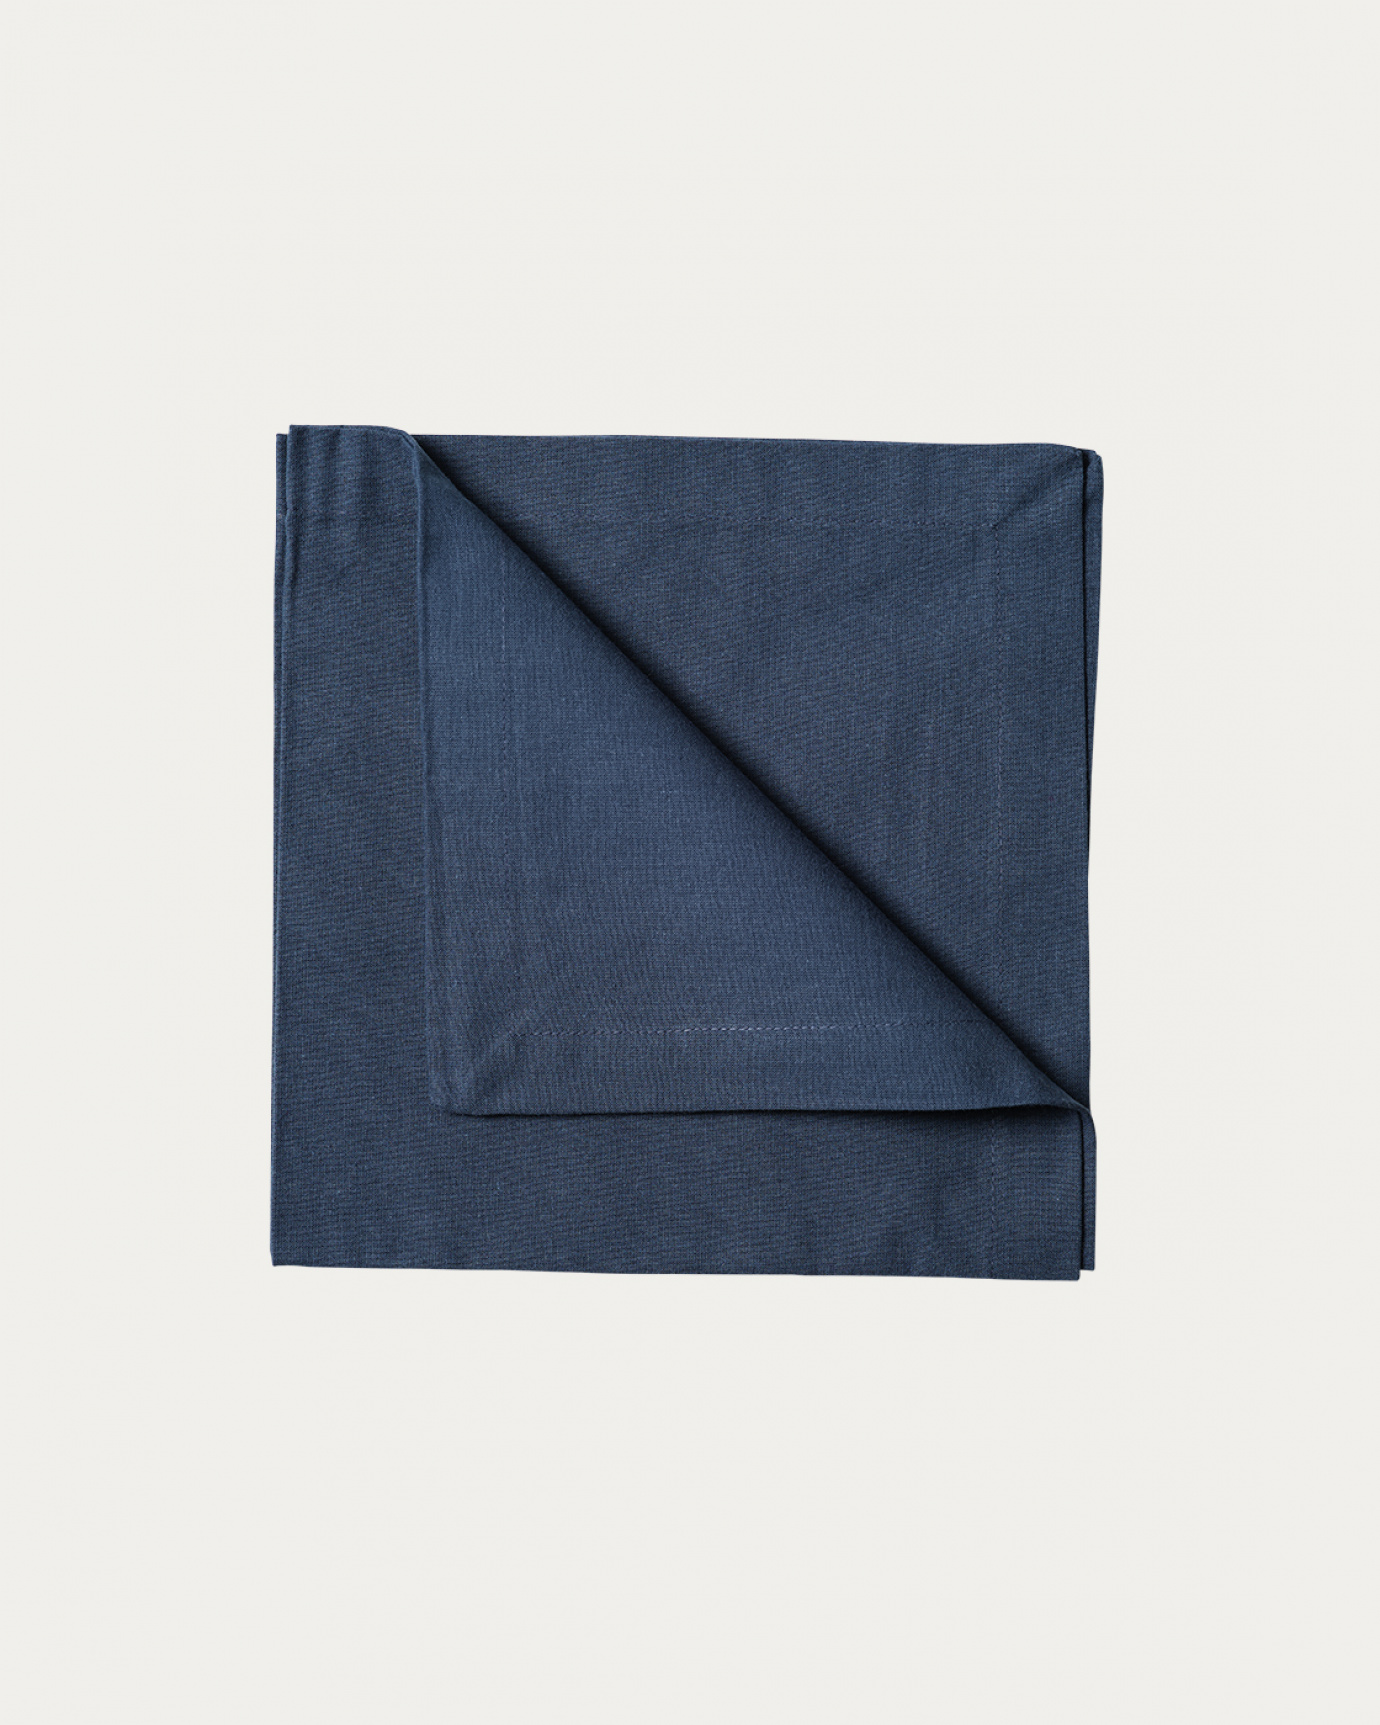 Produktbild indigoblå ROBERT servett av mjuk bomull från LINUM DESIGN. Storlek 45x45 cm och säljs i 4 pack.